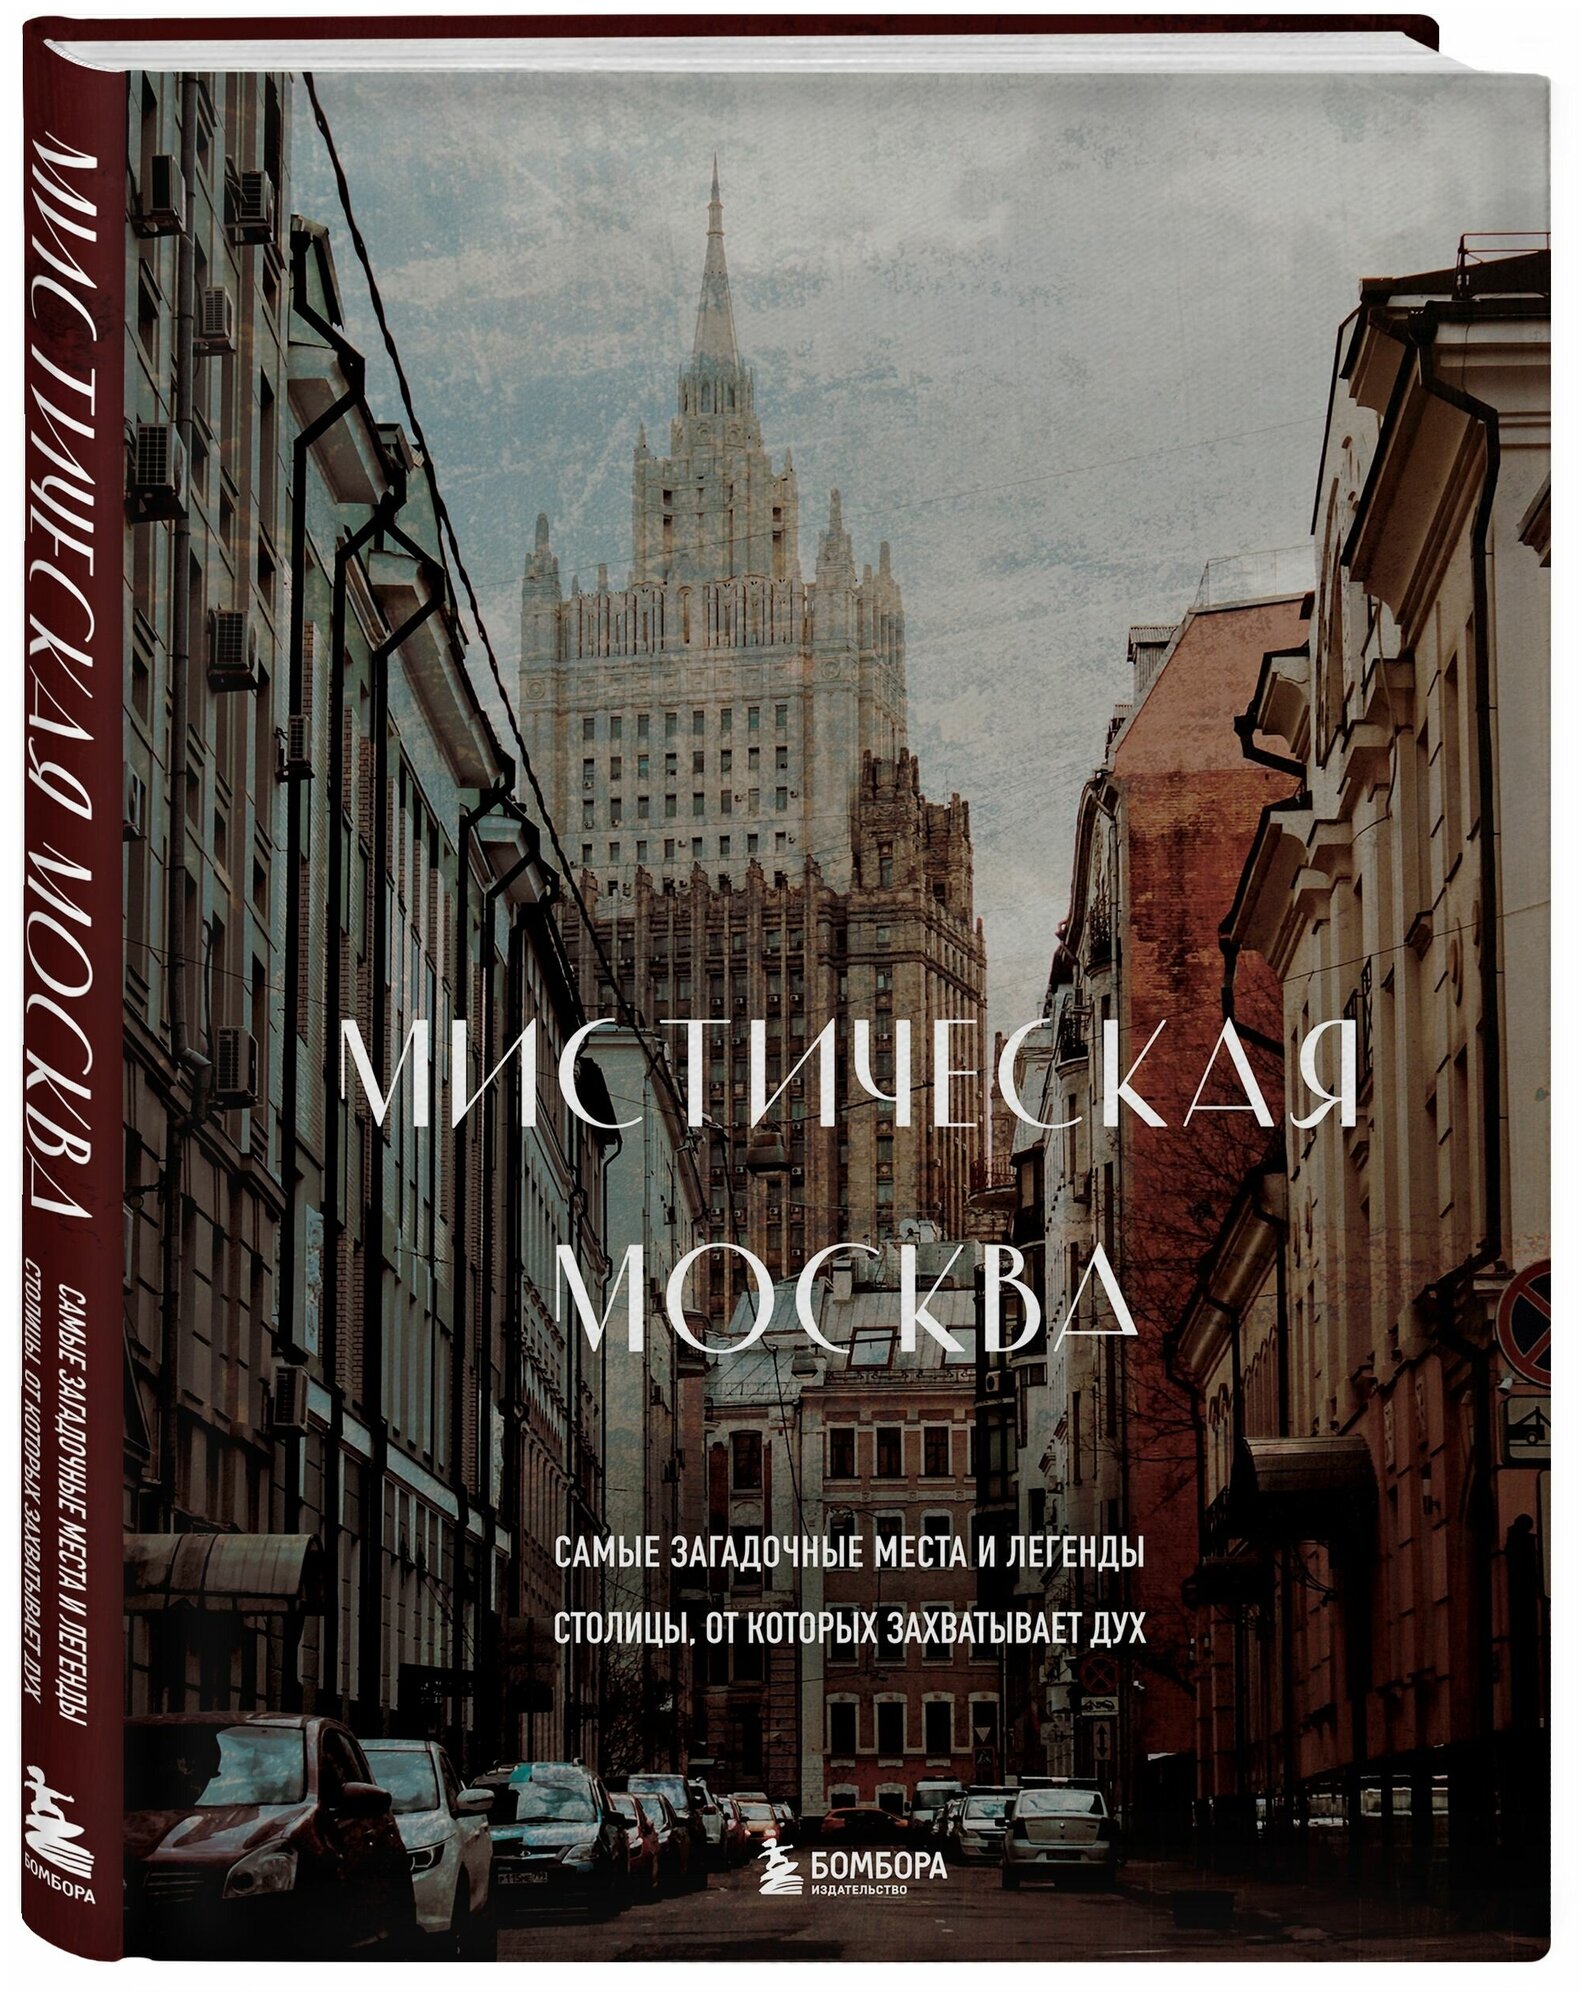 Мистическая Москва. Самые загадочные места и легенды столицы, от которых захватывает дух - фото №18